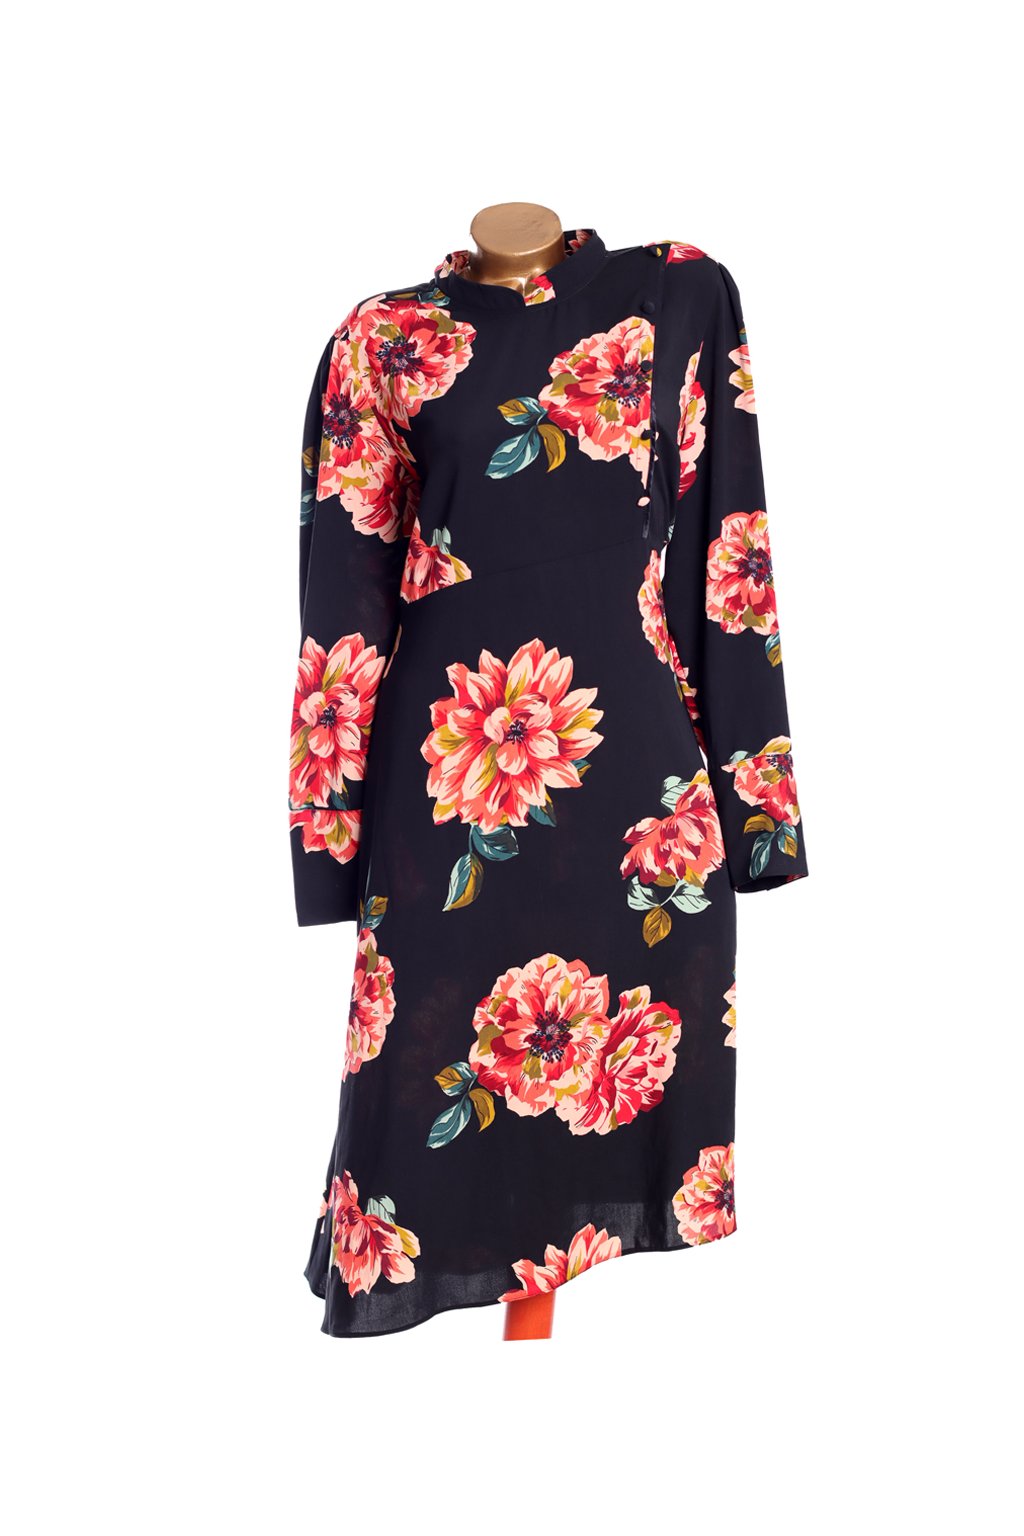 Dámské černé šaty s barevným květinovým vzorem / Simply Be / XXXXL (52) / ANGLIE